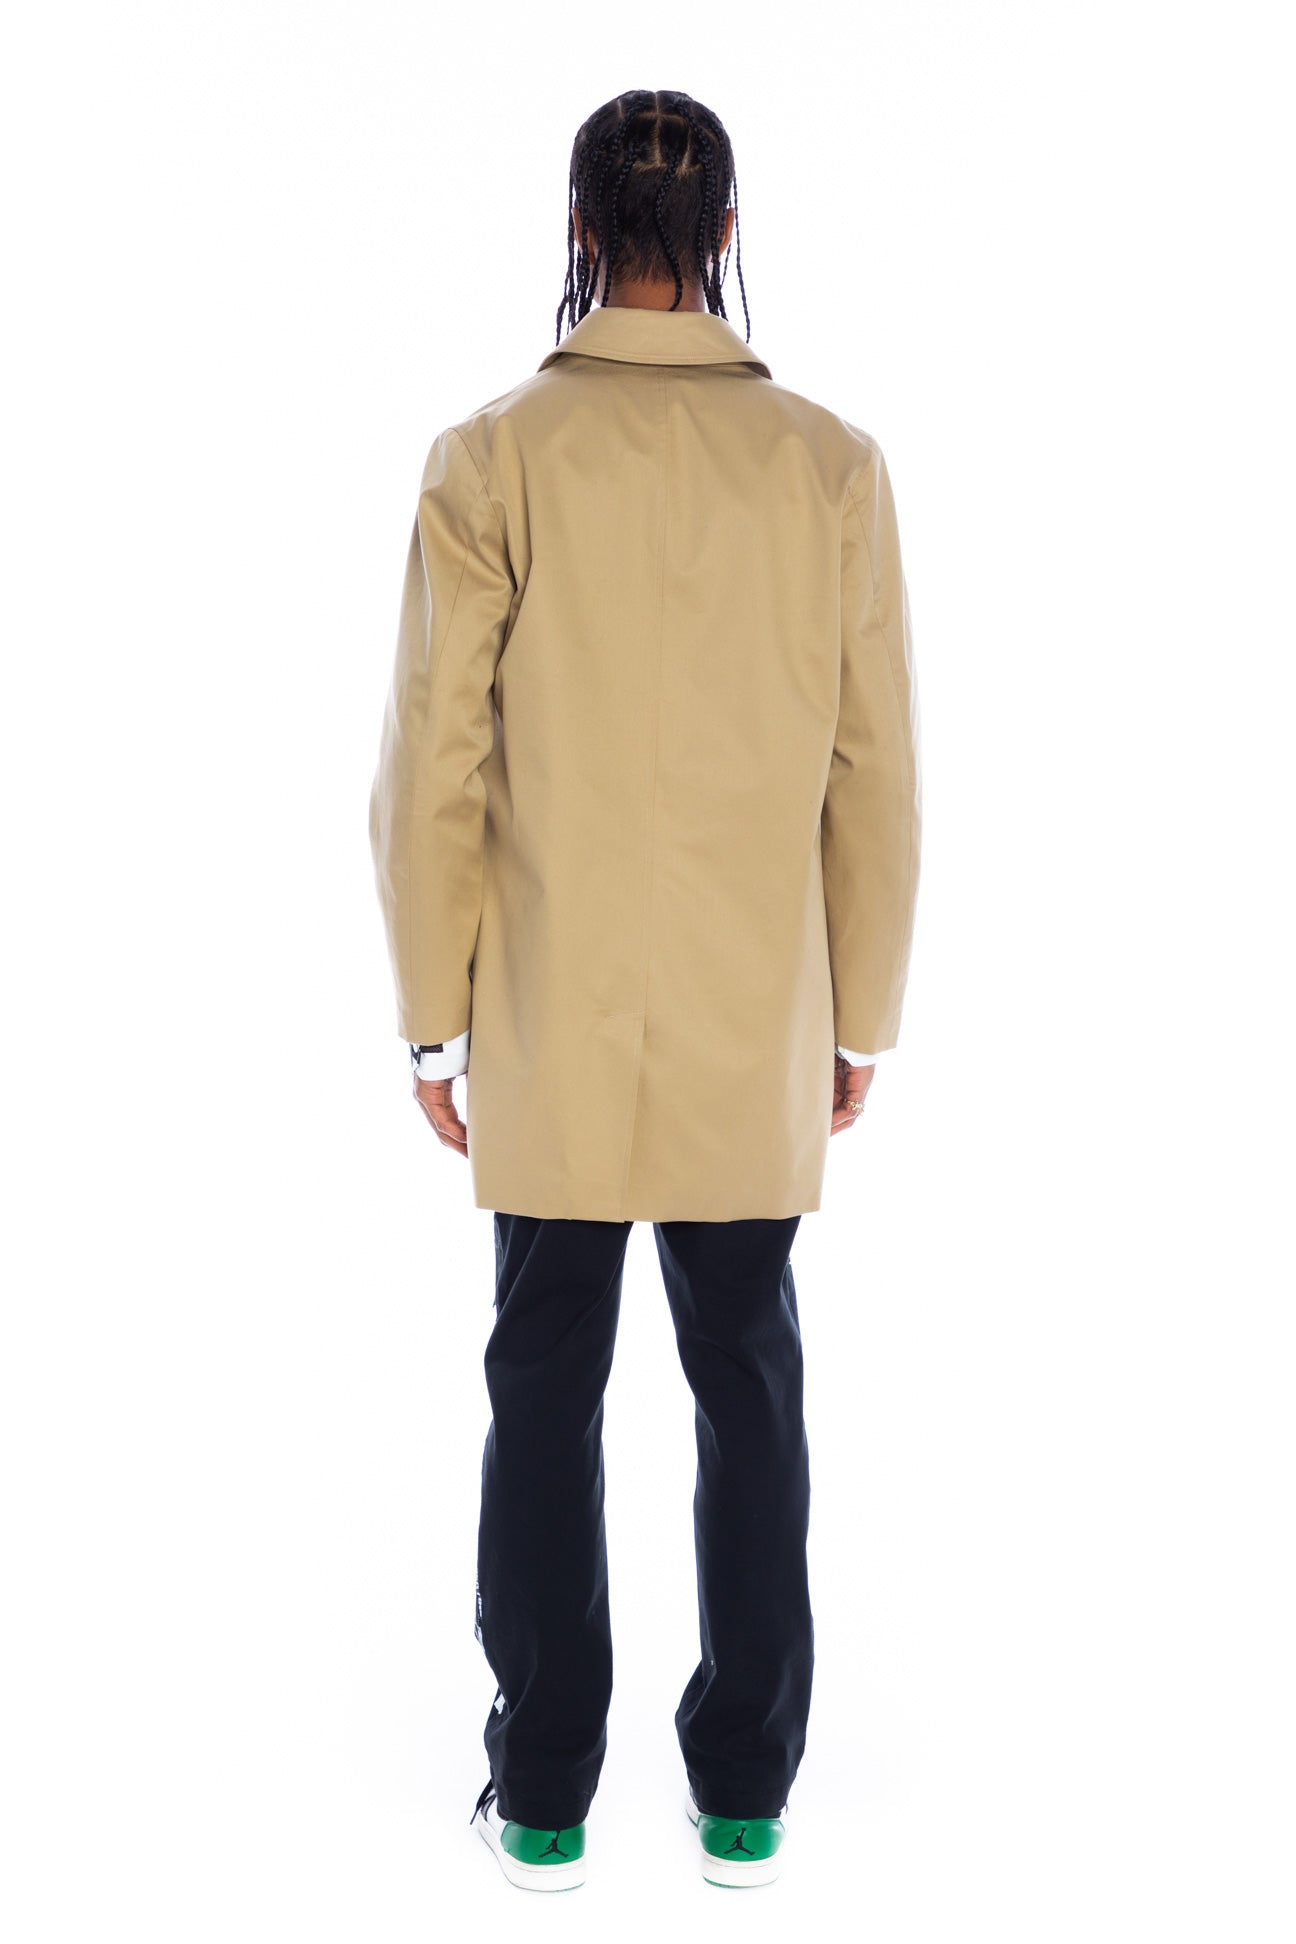 'LABEL MANIA' MEN'S MAC COAT IN KHAKI - Men's Jackets & Coats - Libertine